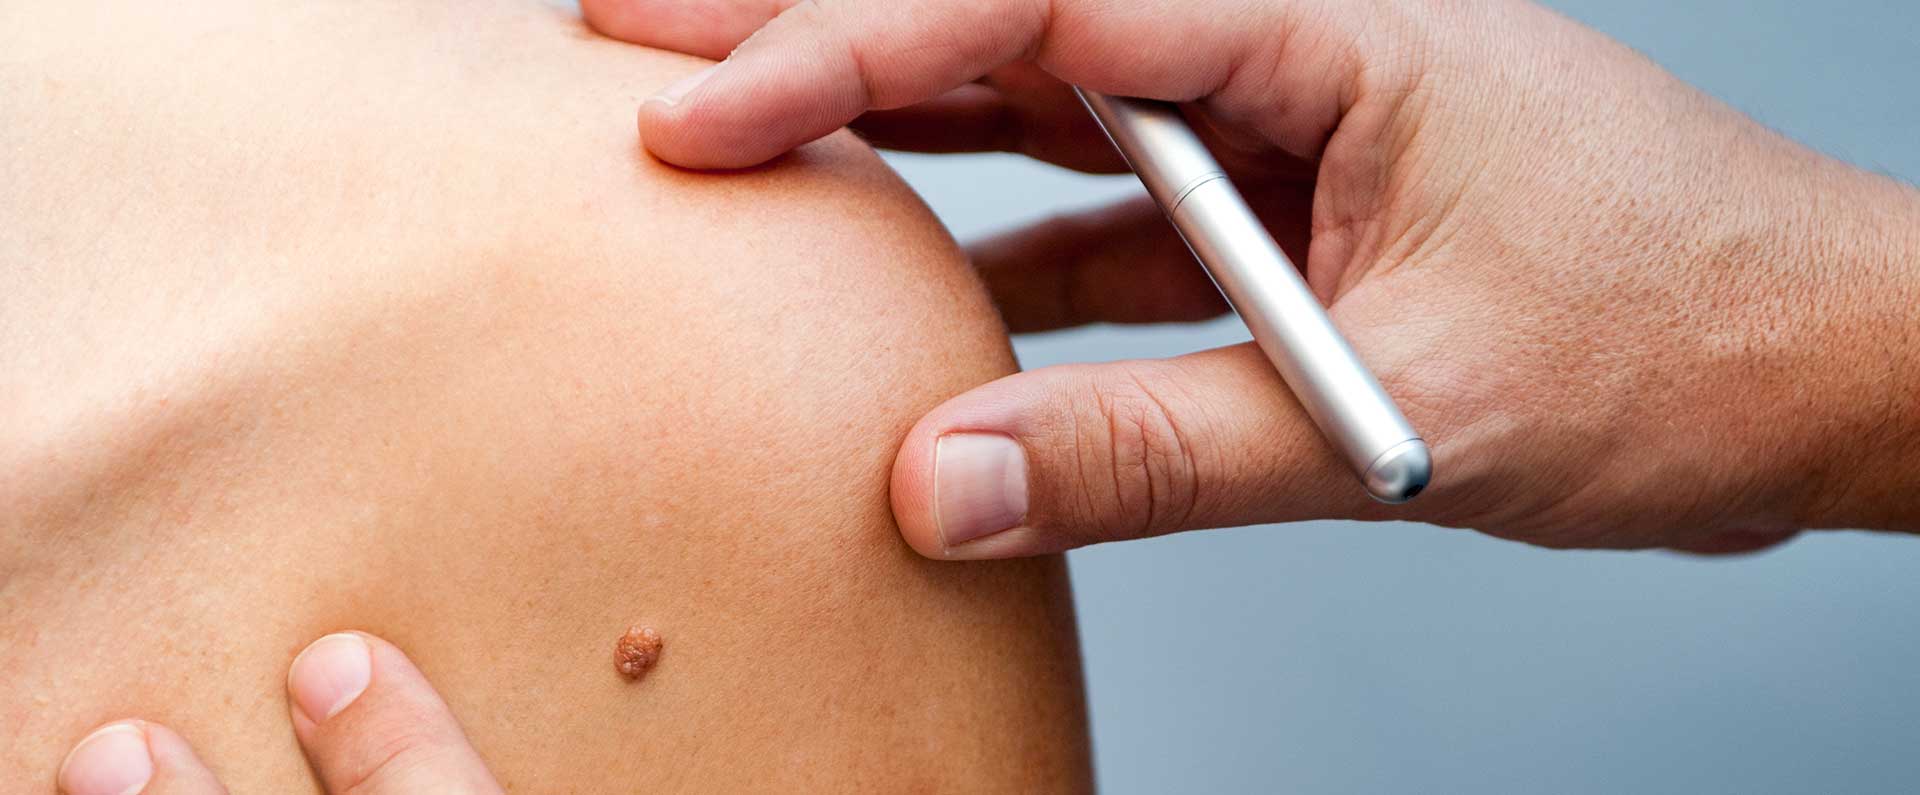 Você tem risco para o câncer de pele?